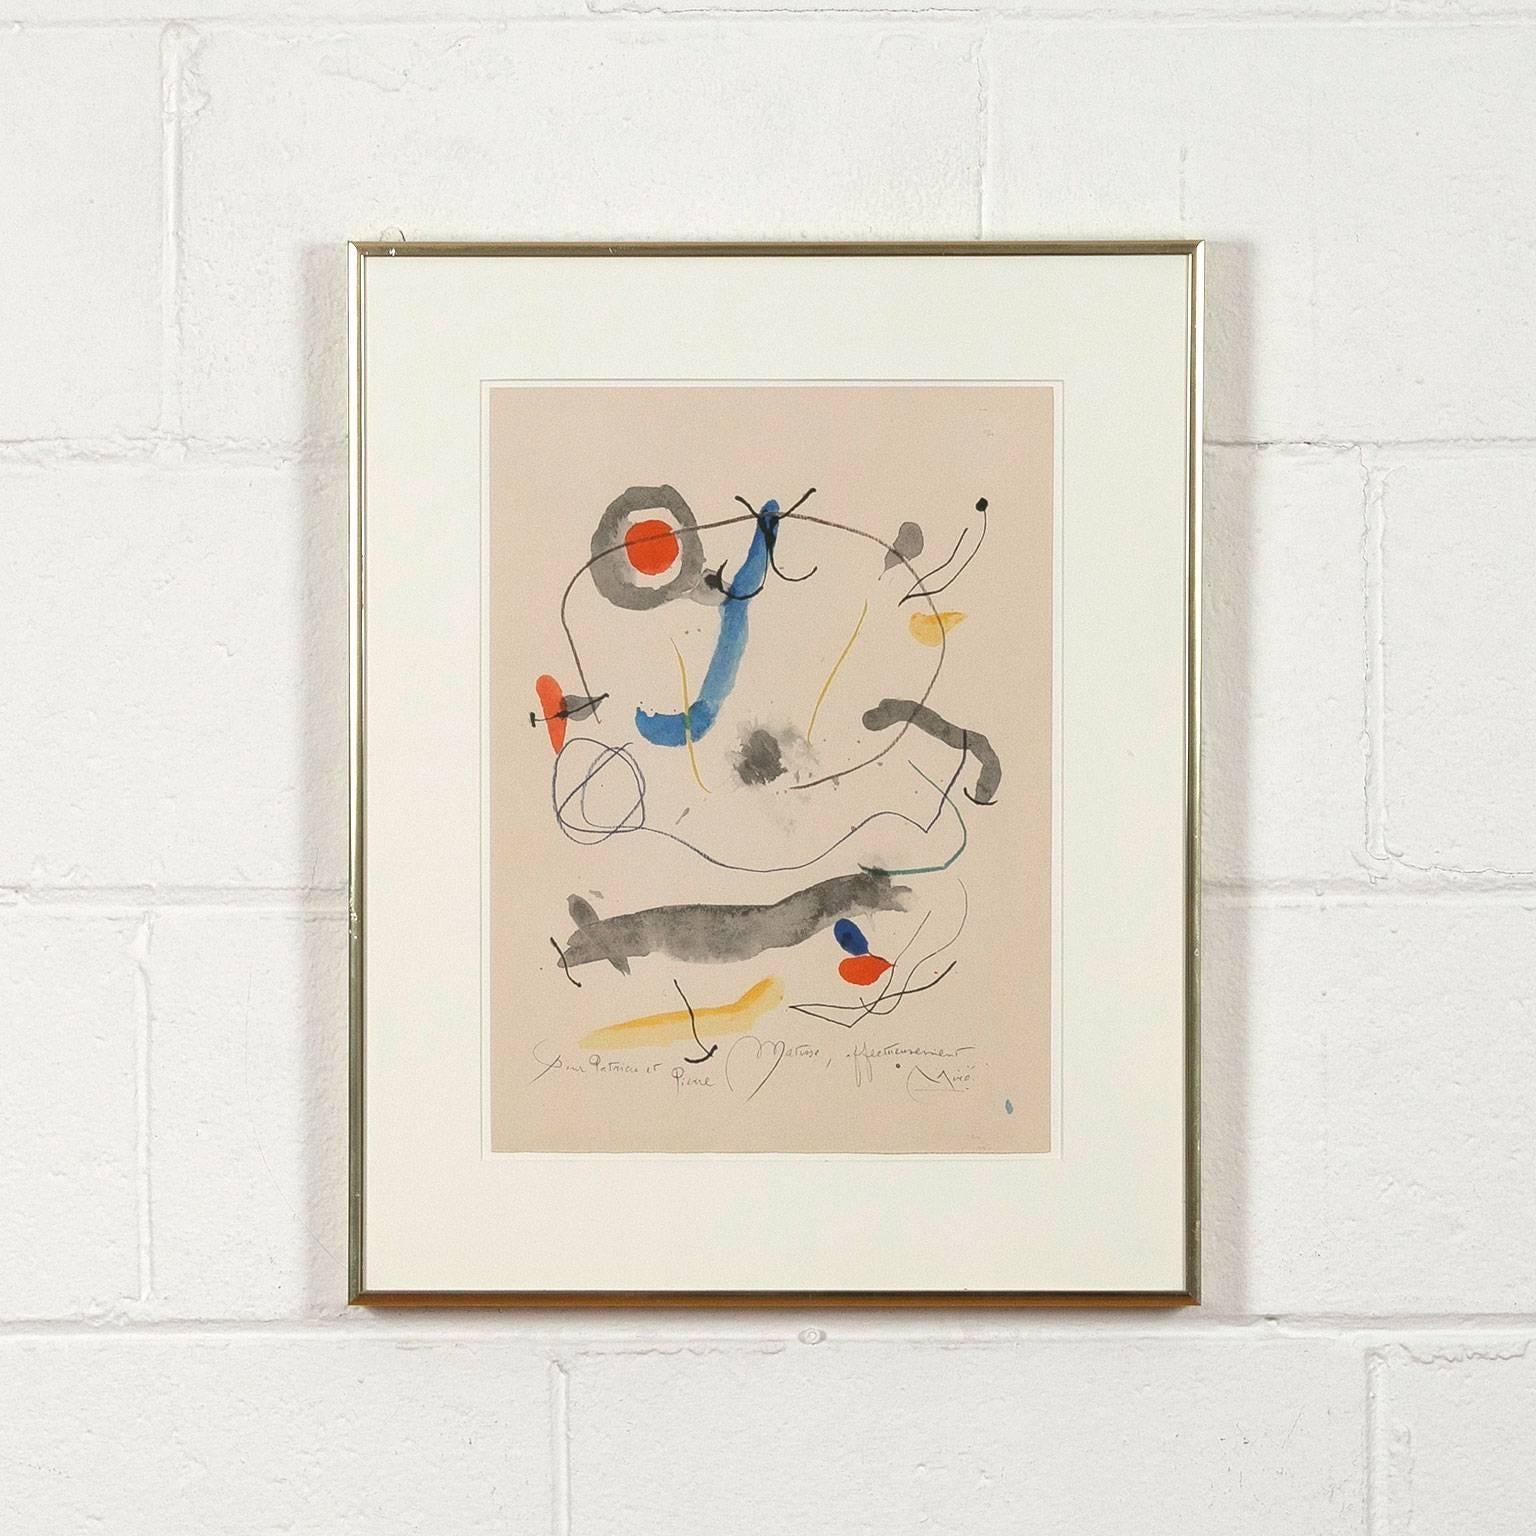 “Quelques Fleurs pour des Amis: Pierre Matisse (#21) - Beige Abstract Print by (after) Joan Miró